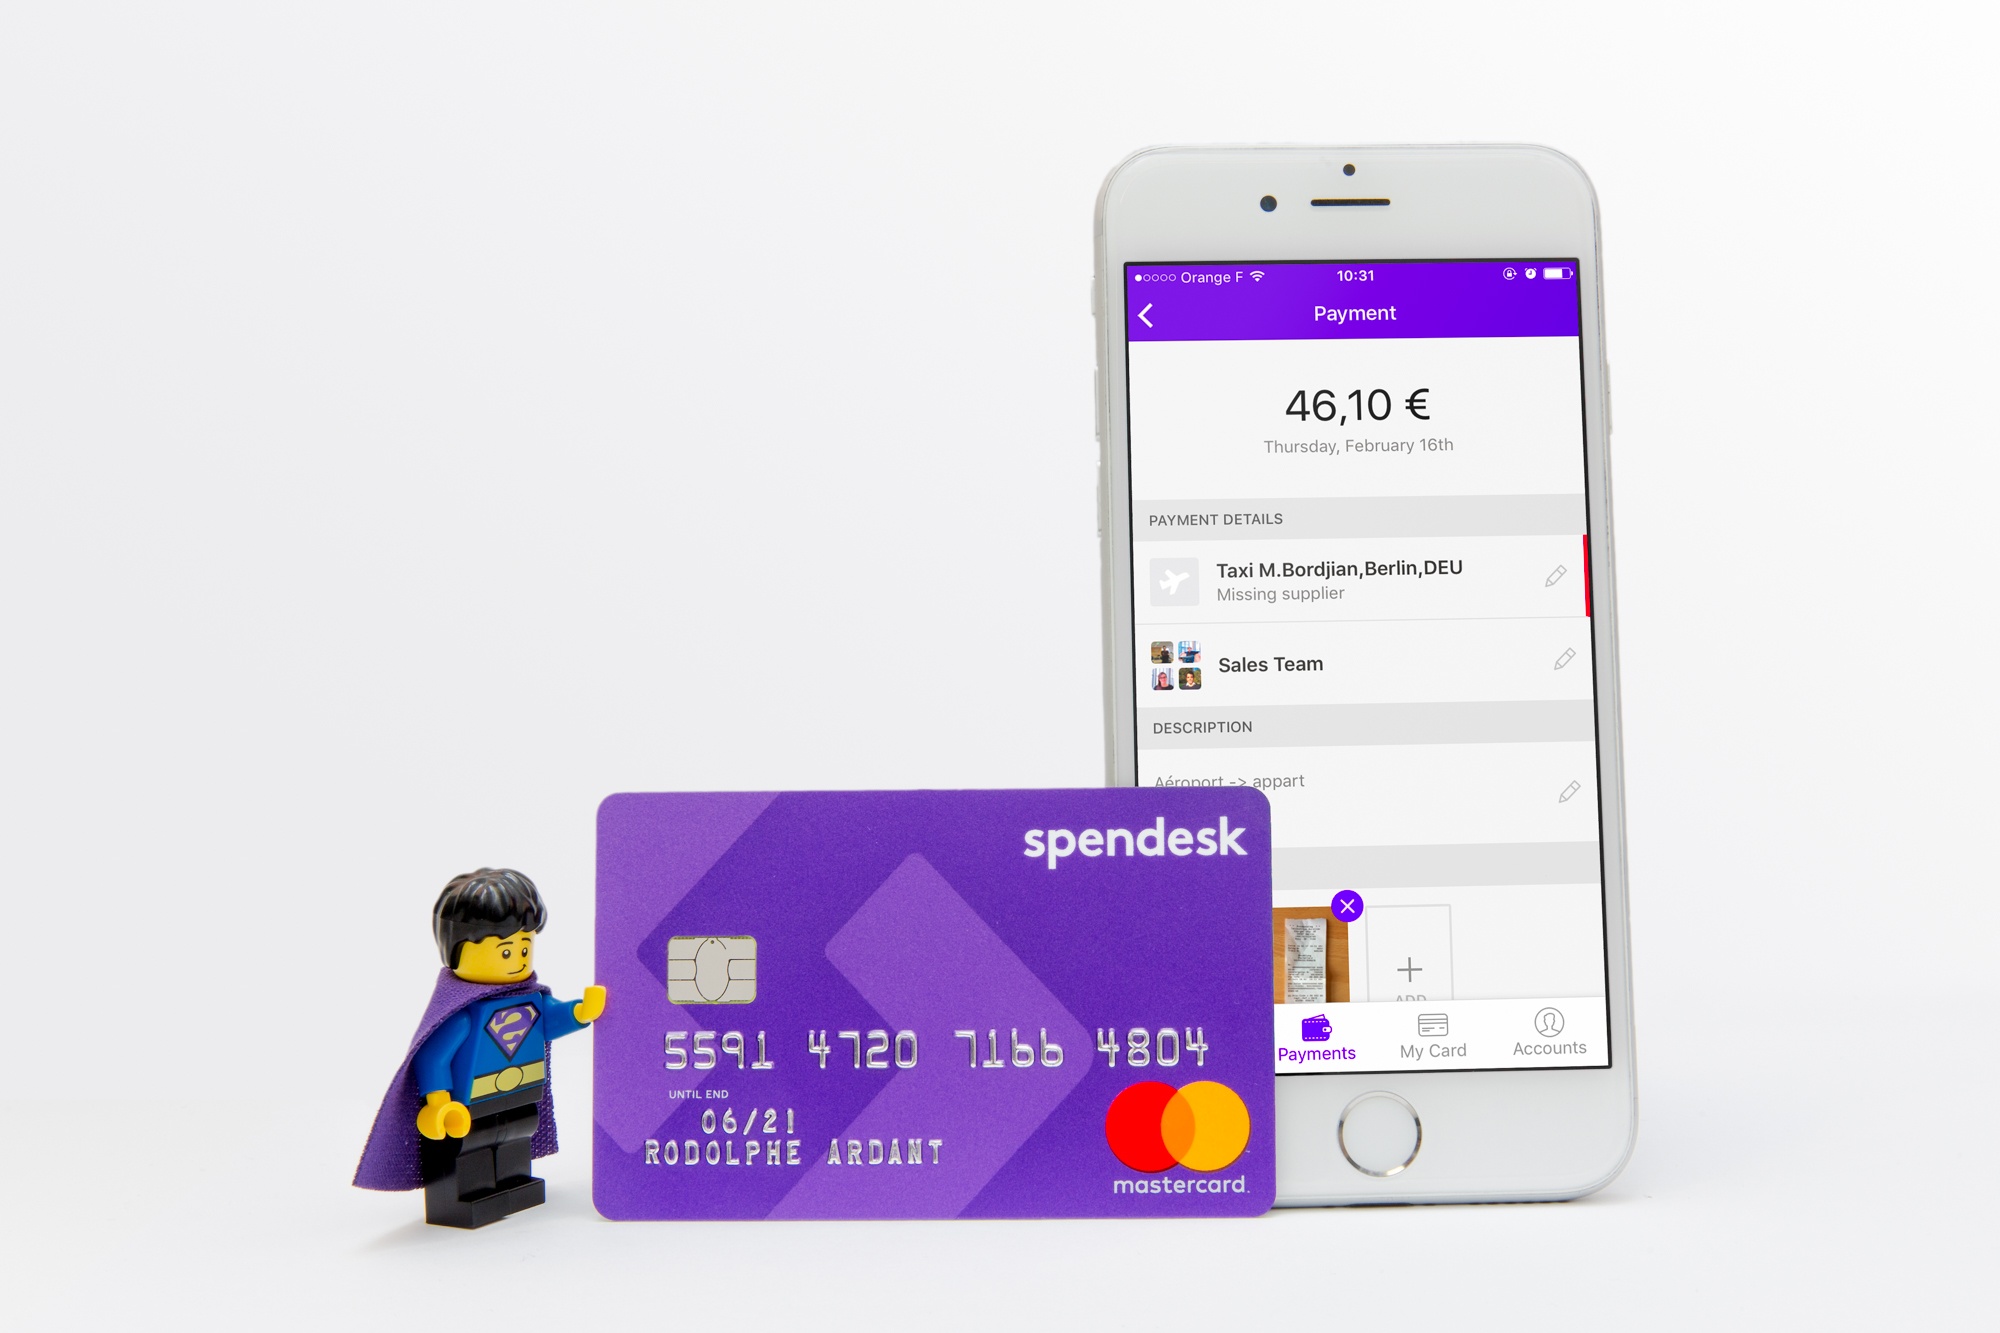 spendesk-mobile-card